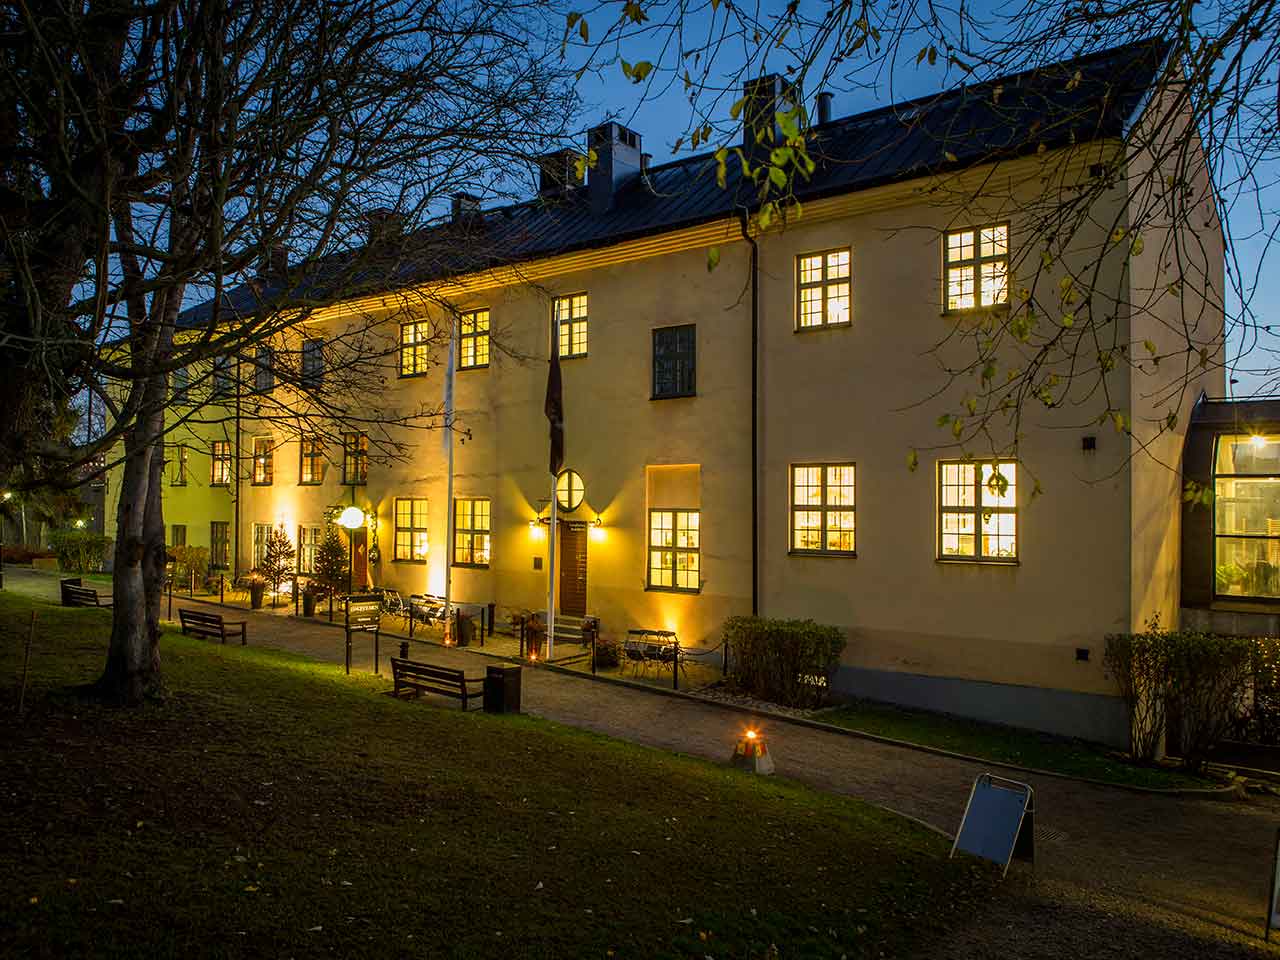 Festvåning på Långholmen - Elegant och klassisk festlokal